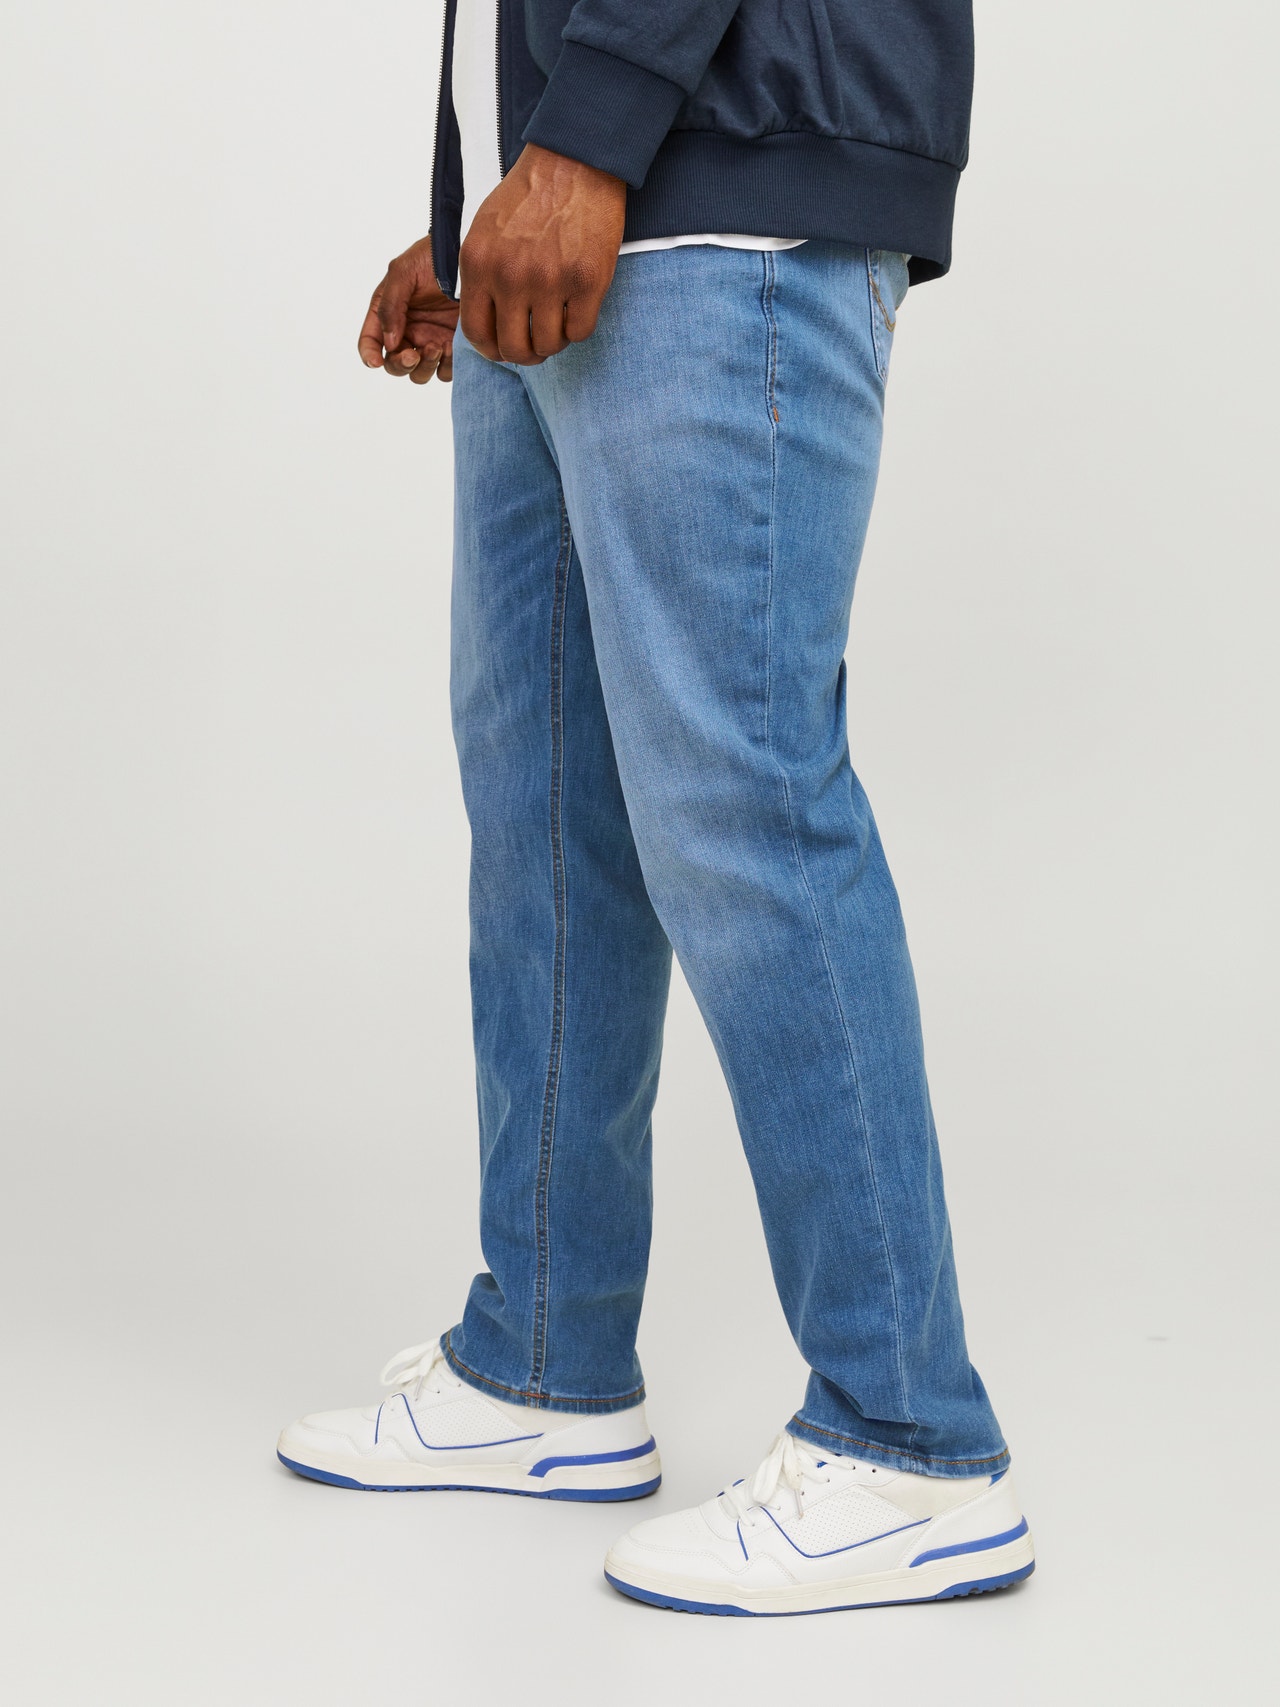 Jack & Jones Plus Size JJIGLENN JJORIGINAL AM 815  PLS Jeans Slim Fit -Blue Denim - 12188524